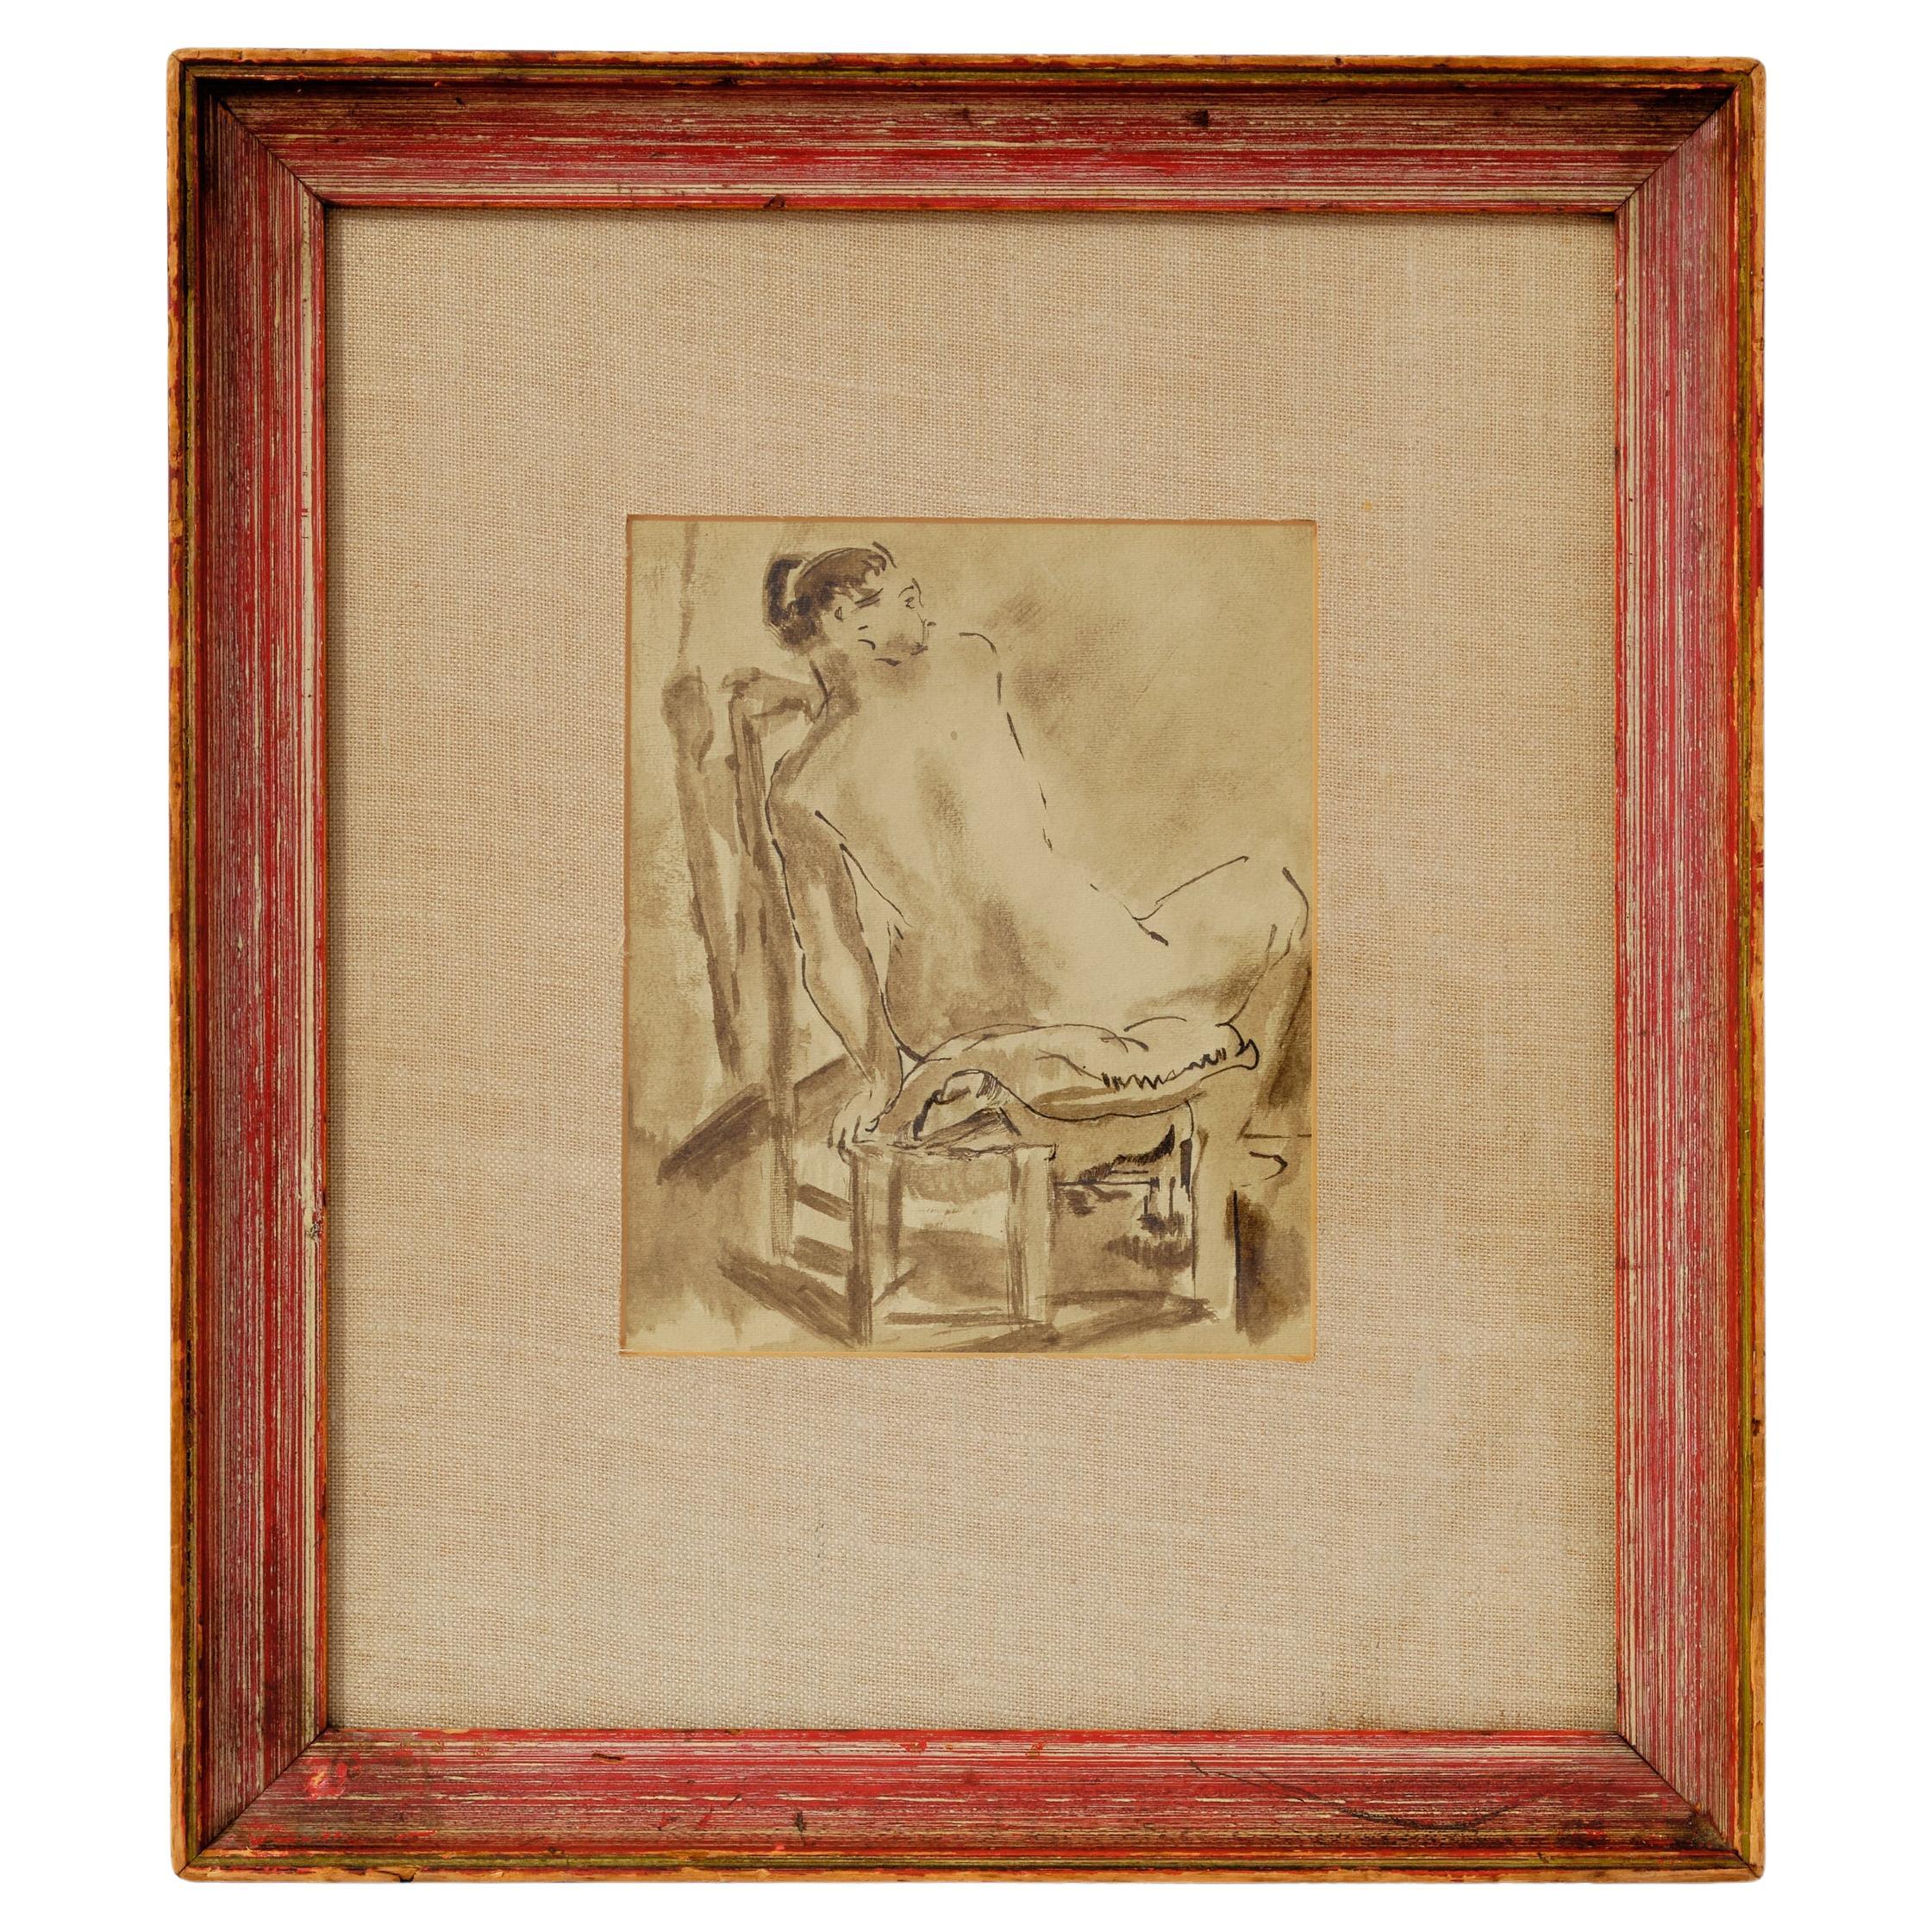 Nude Painting, Ink Wash, C 1950, Back View, Original Brown Wood Framing, Vintage